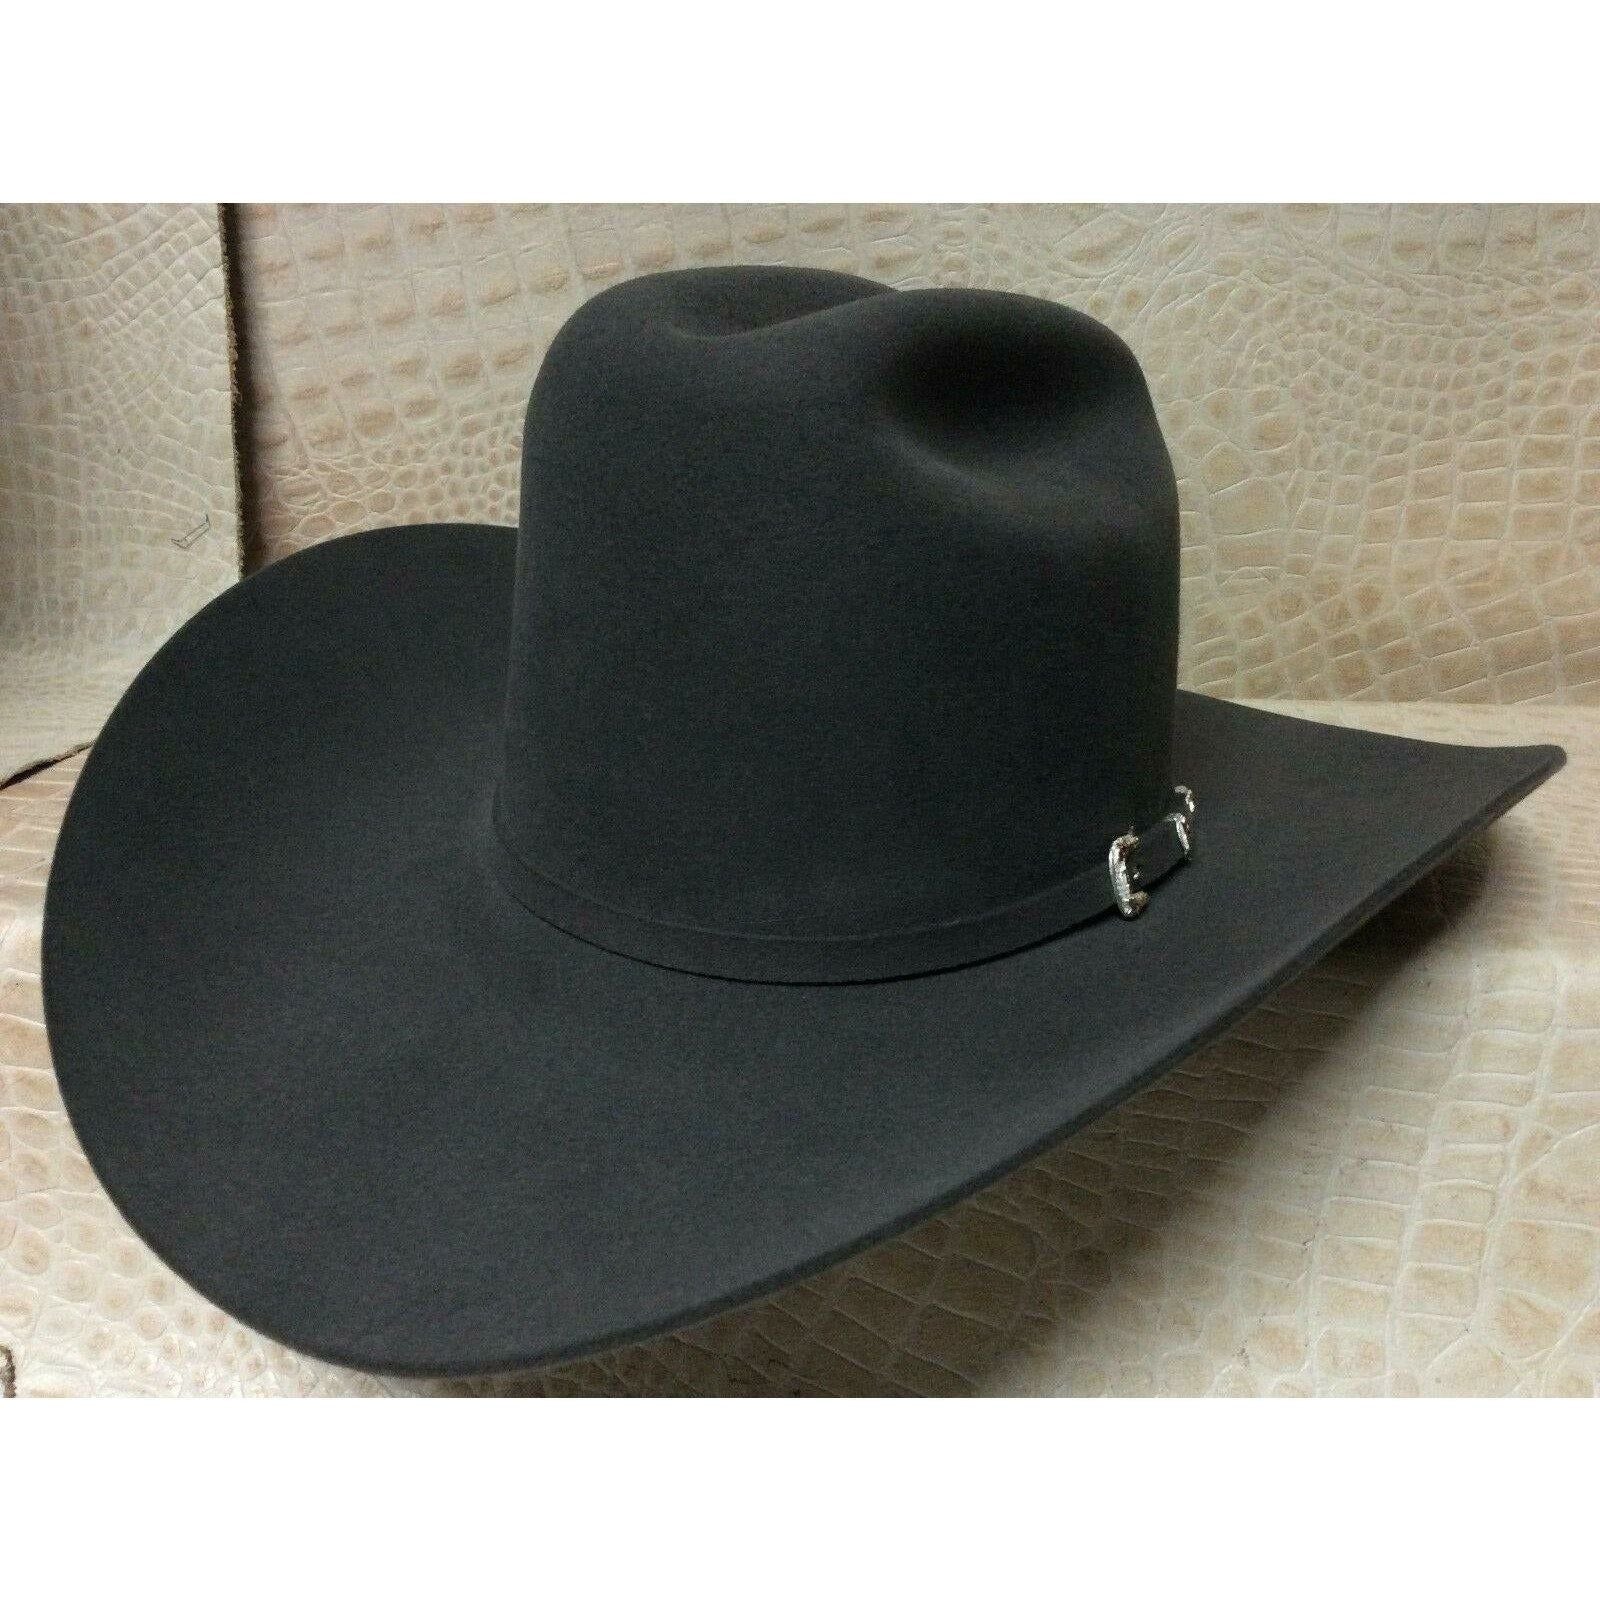 30X Stetson El Patron Charcoal Grey Beaver Fur Felt Western Cowboy Hat Gray - CWesternwear